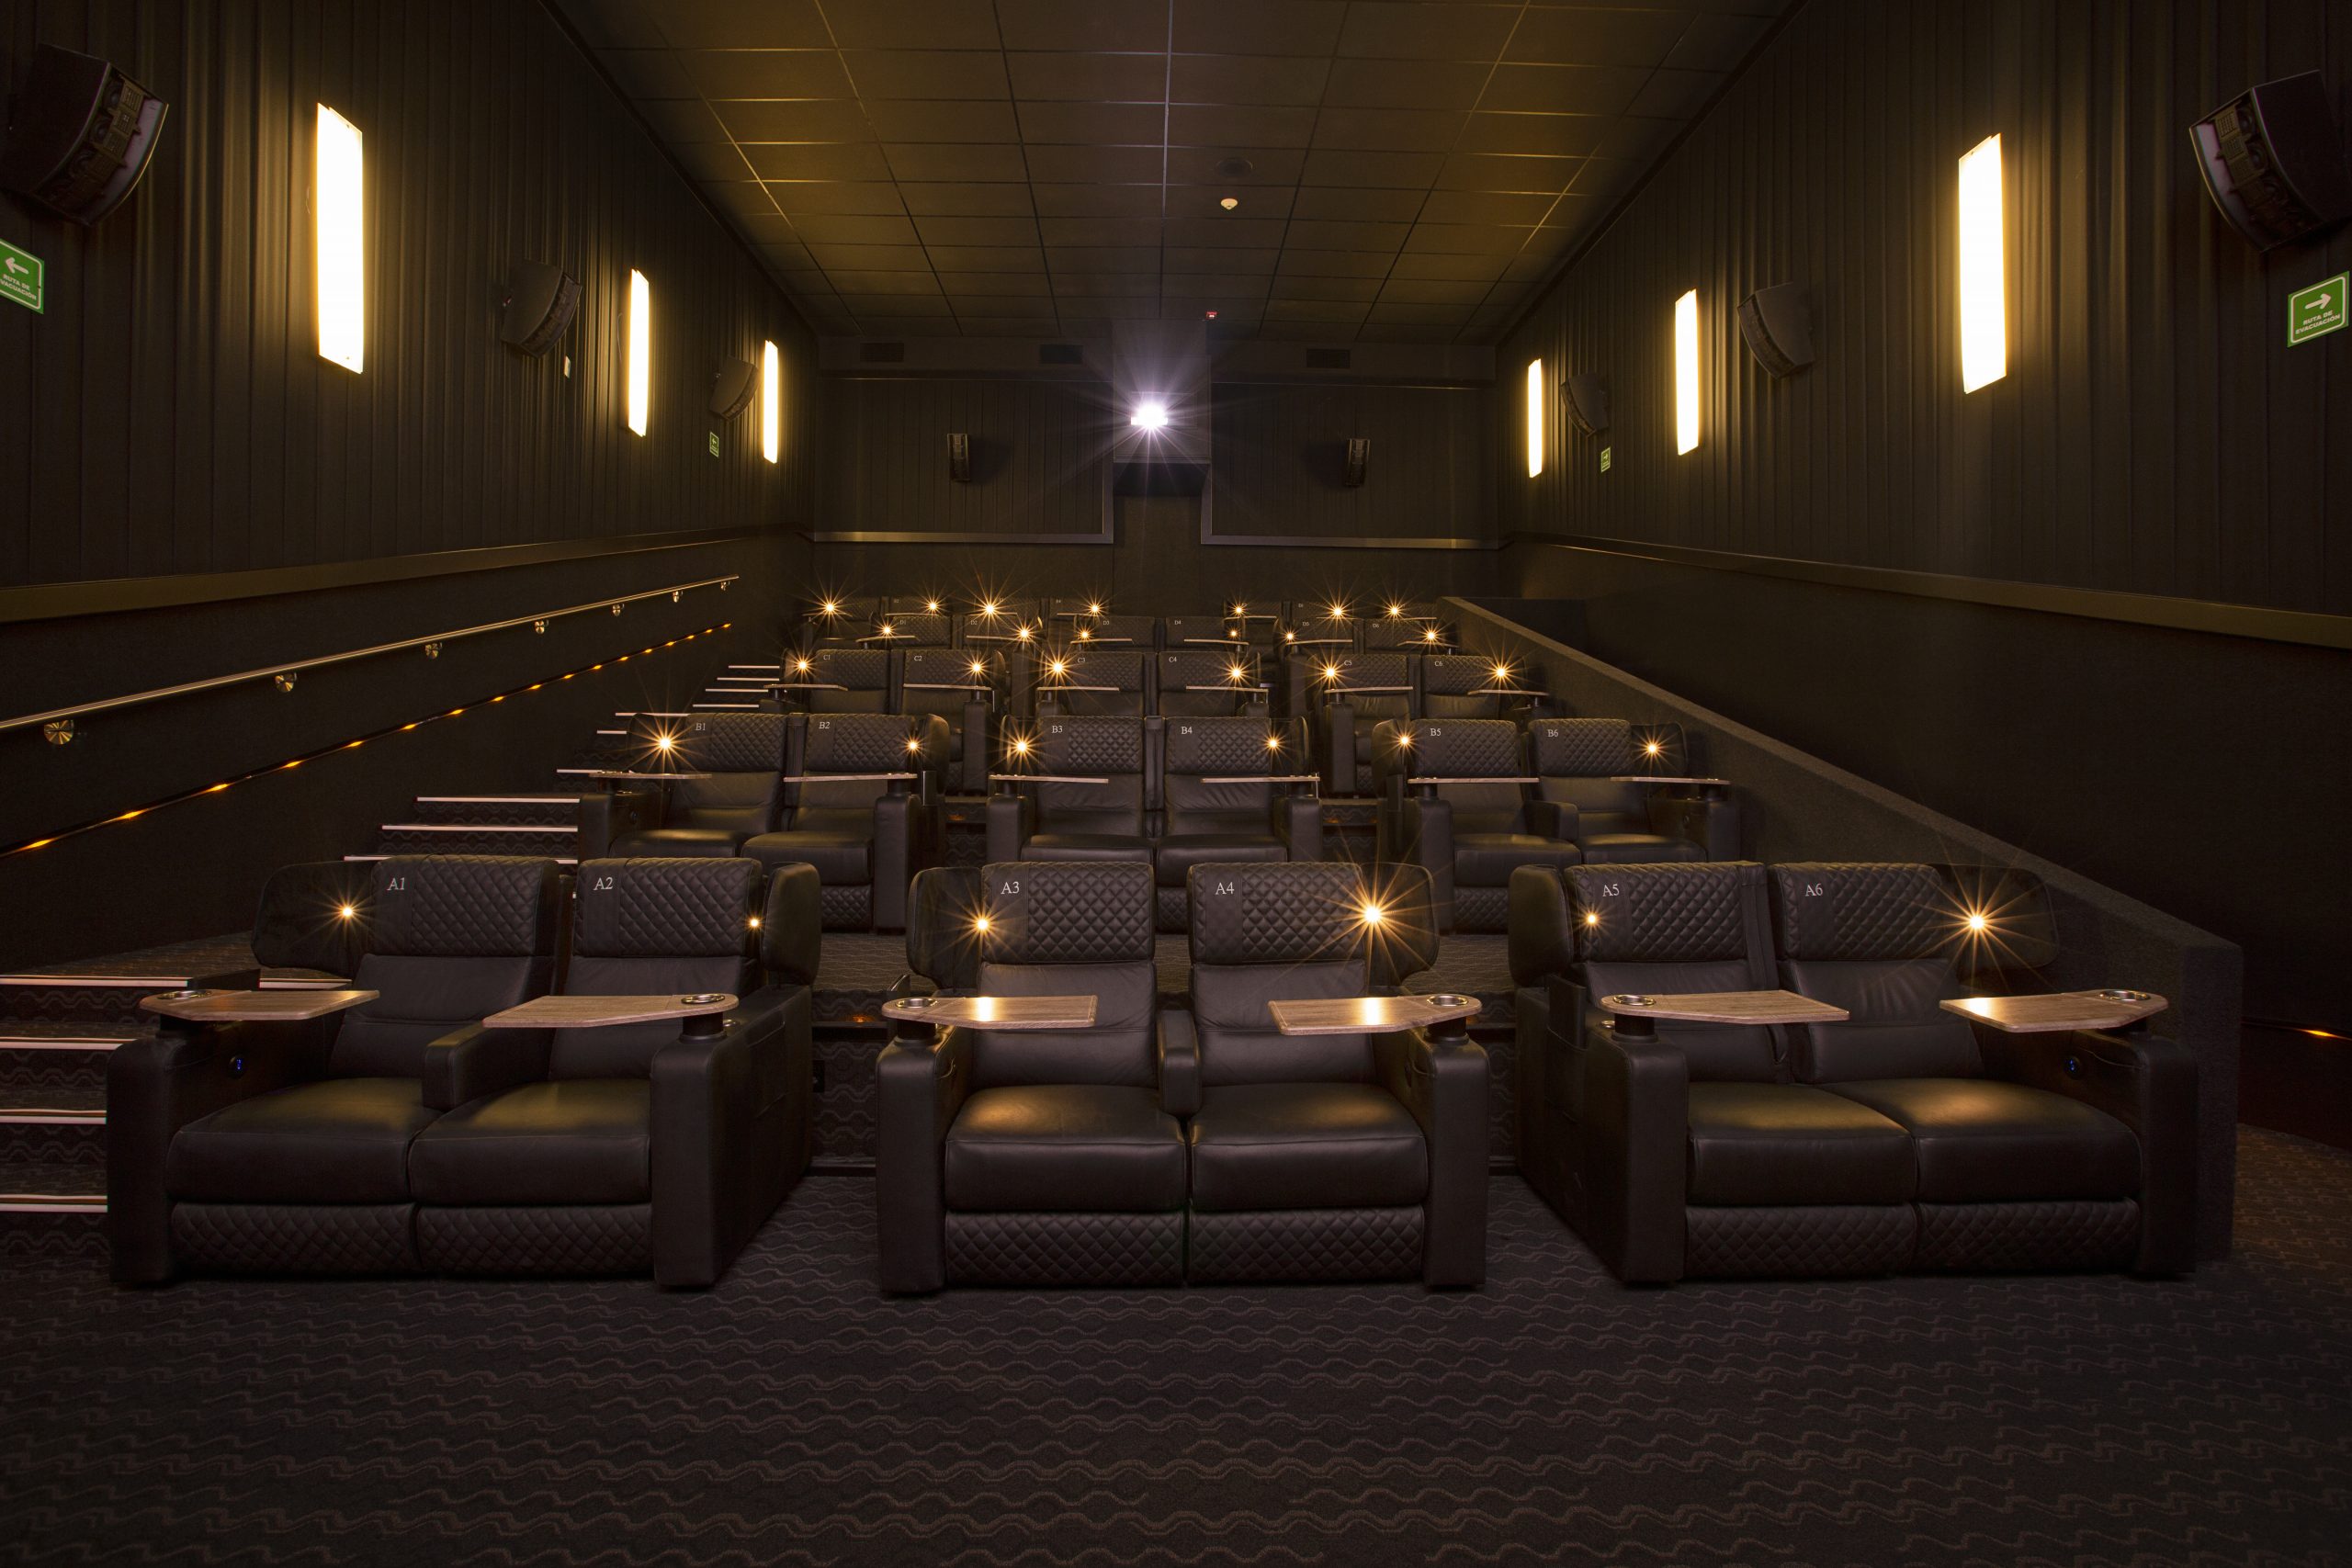 Cinemex anuncia las medidas que tomará para la reapertura de sus salas